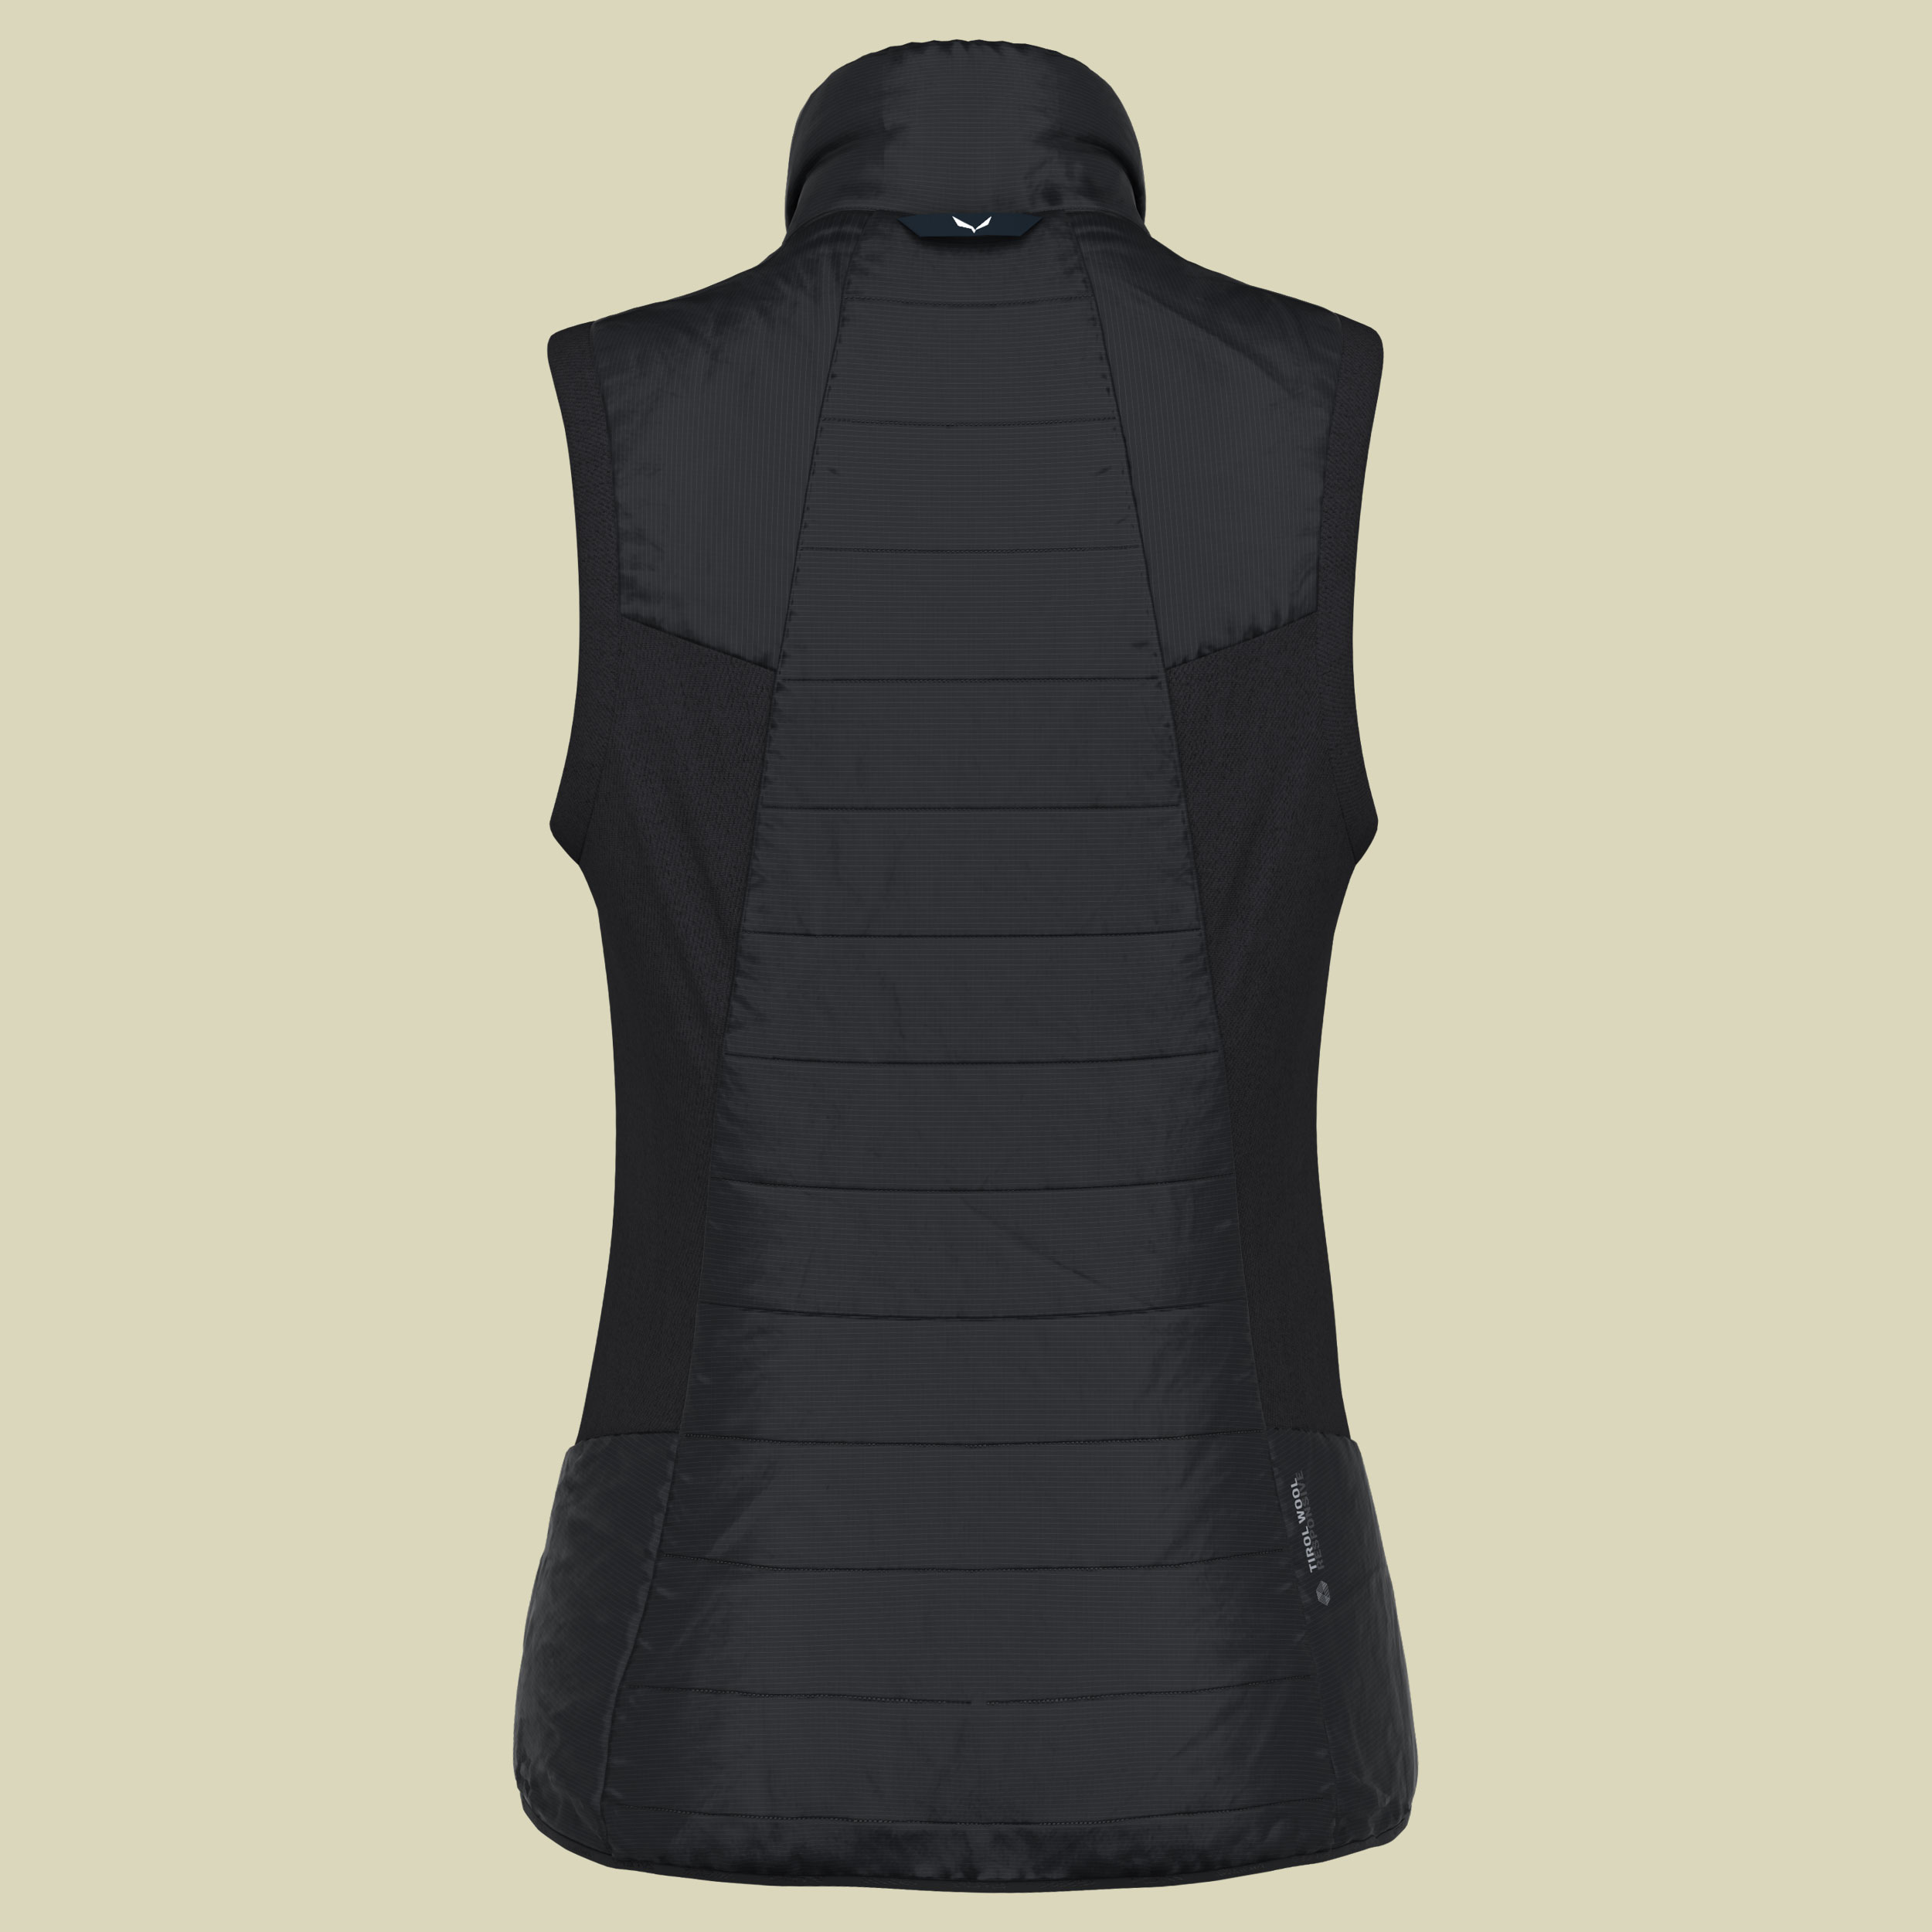 Ortles Hybrid TWR Vest Women Größe 40 Farbe black out